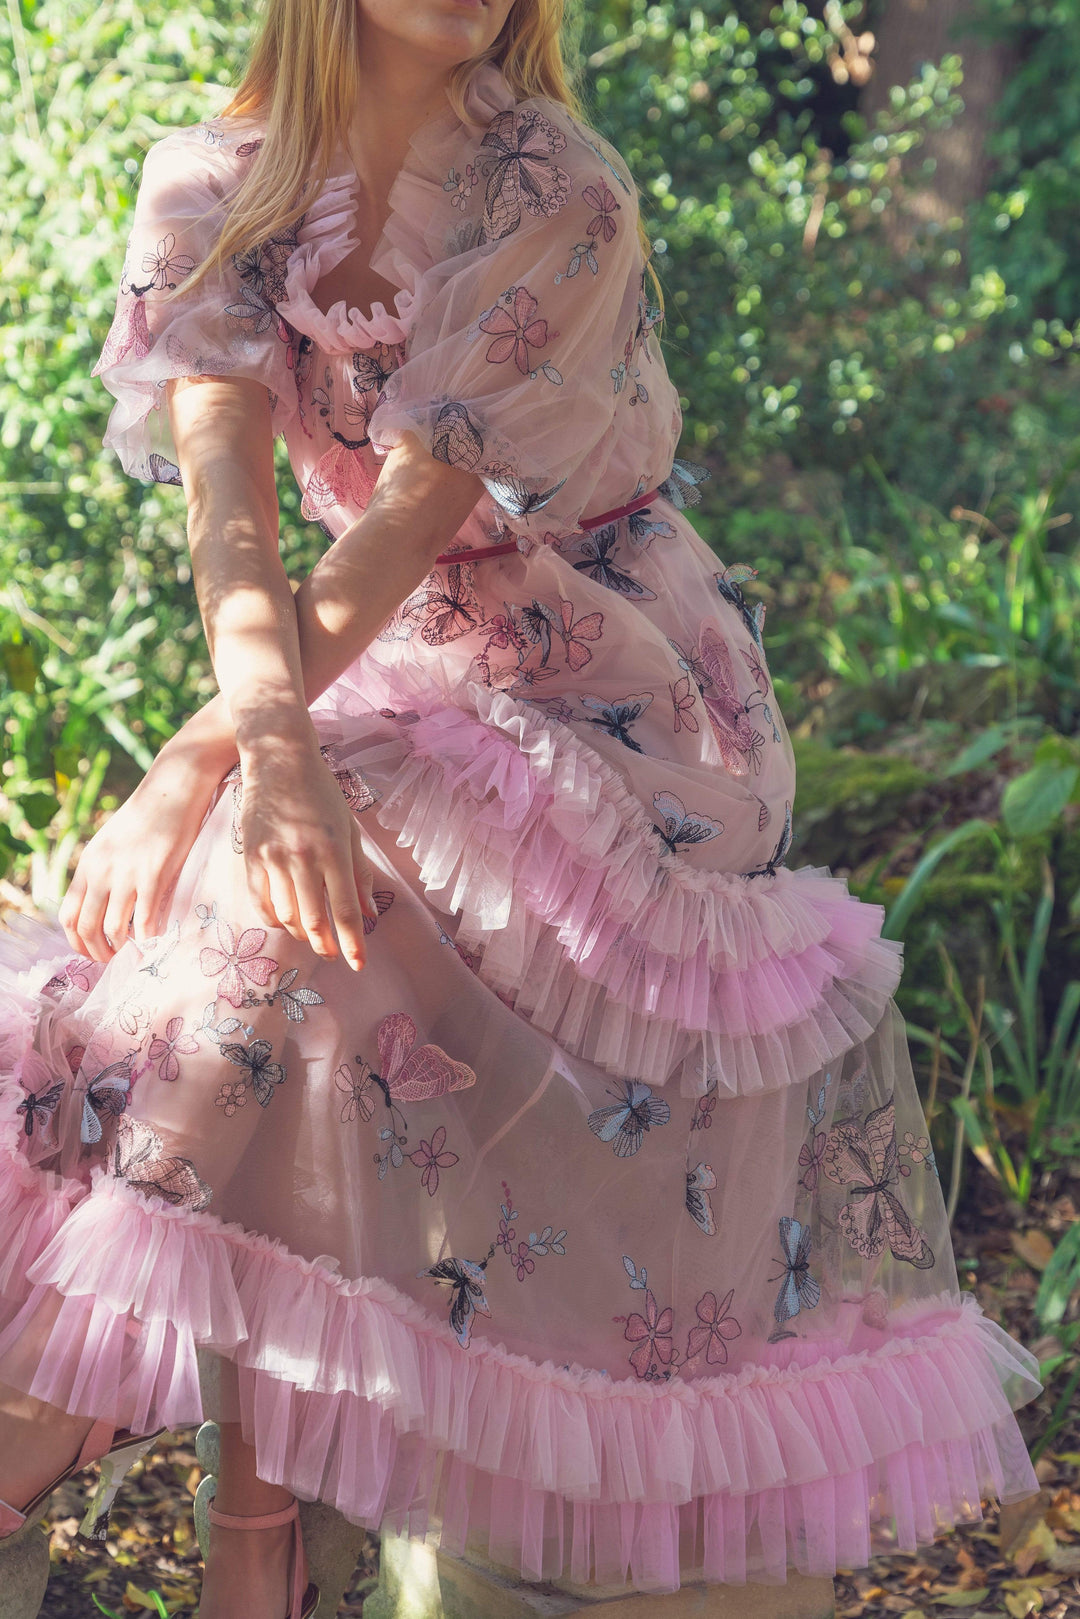 Fairy Tong dress Butterfly Dream Maxi Dress